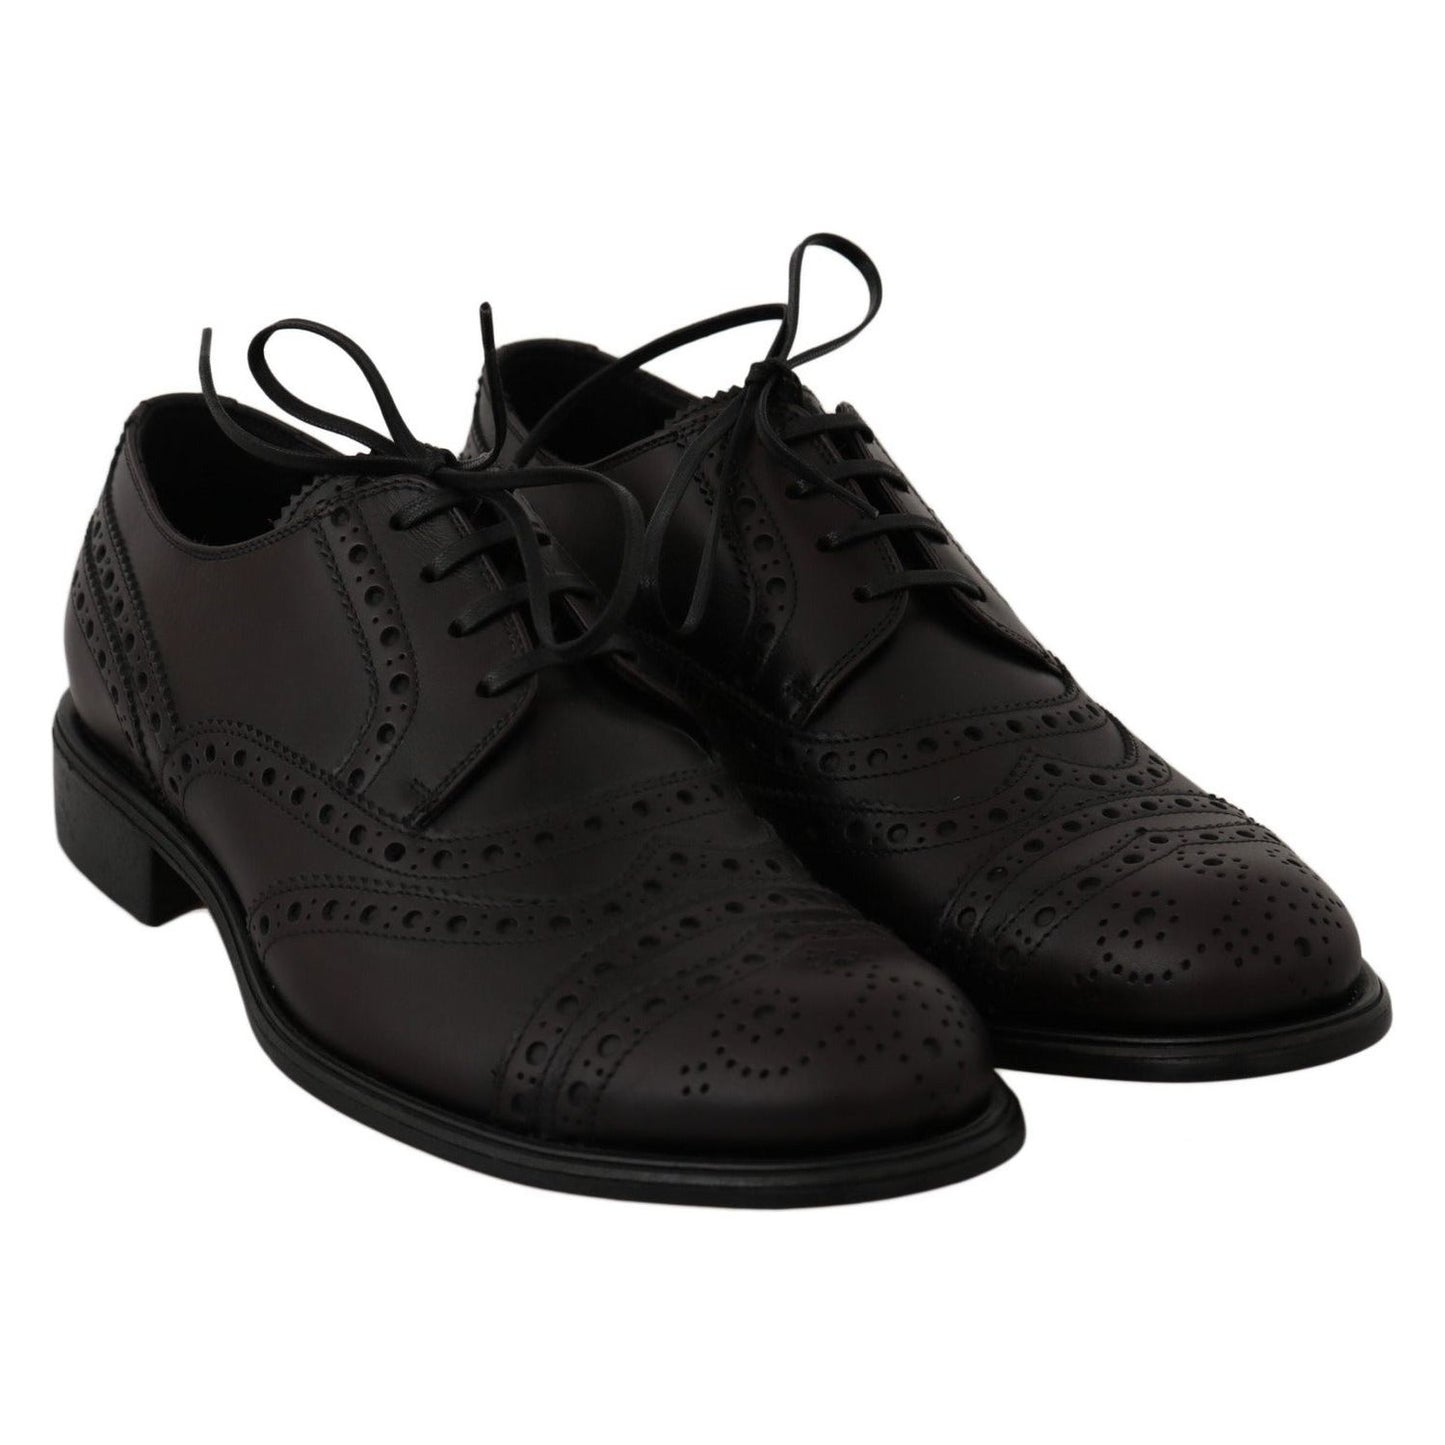 Dolce & Gabbana Elegant Bordeaux Wingtip Derby Dress Shoes Dress Shoes black-leather-wingtip-oxford-dress-shoes-1